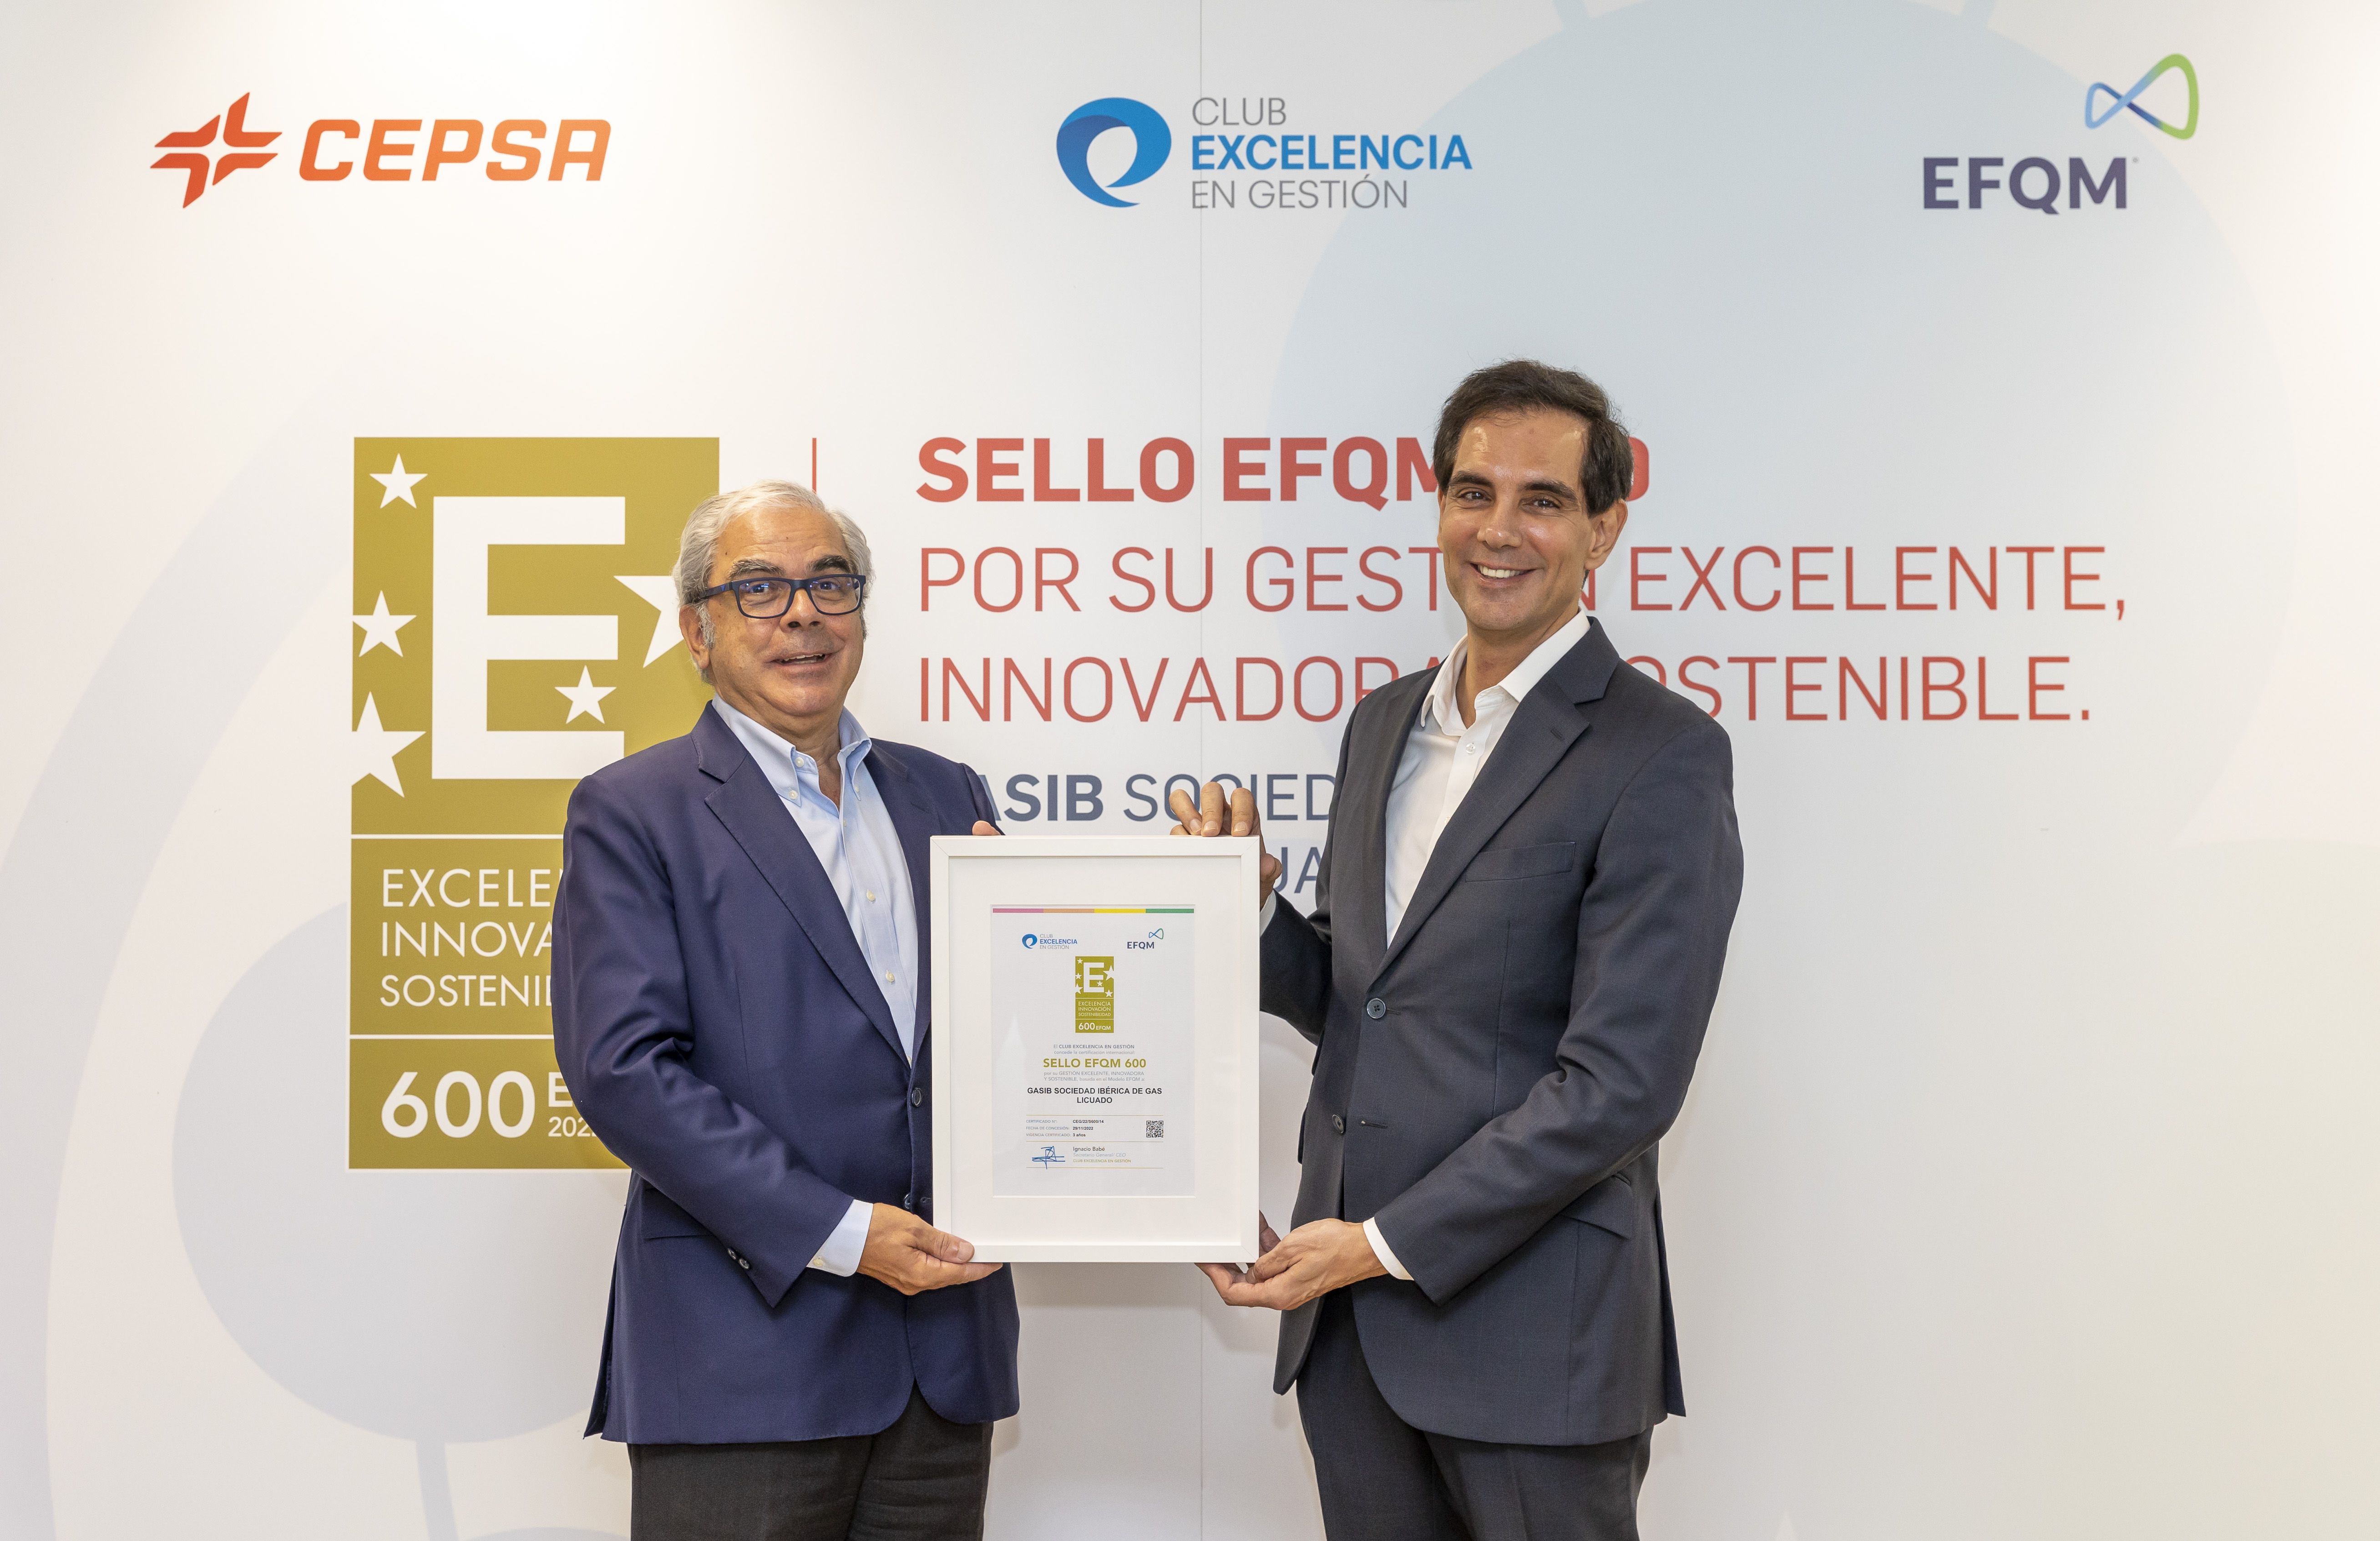 Ignacio Babé, director y CEO del Club Excelencia en Gestión y Filipe Henriques, director  de GLP de Cepsa. Cepsa, la única energética española reconocida por su gestión excelente, innovadora y sostenible. 